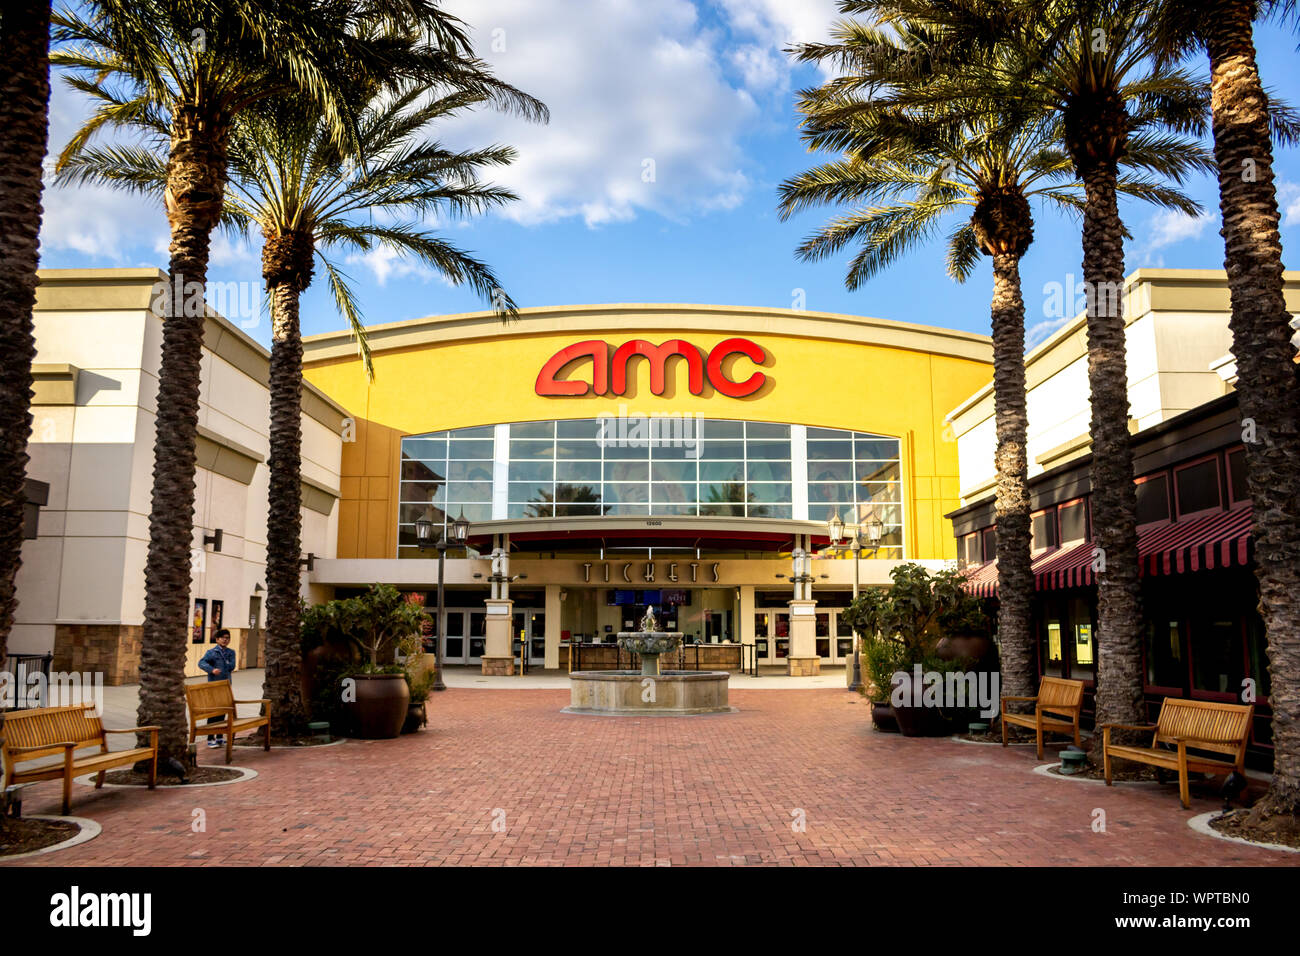 Rancho Cucamonga, Kalifornien, Vereinigte Staaten - 02-22-2019: Blick auf ein Schild vor dem Laden und plaza für das Kino AMC. Stockfoto